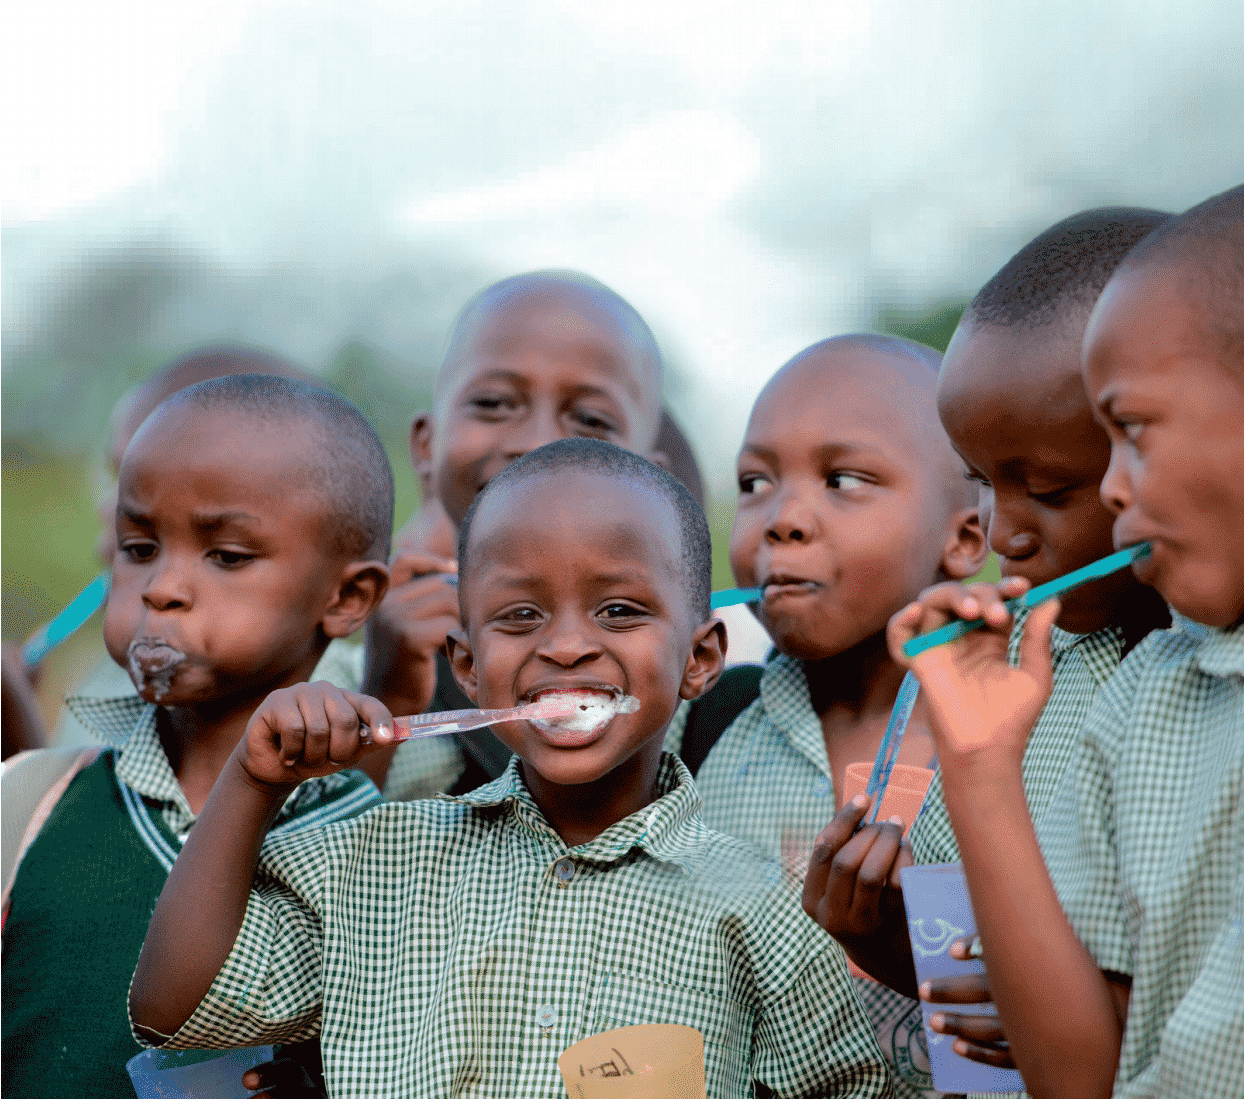 Tandsundhed Uden Grænser er en dansk udviklingsorganisation, som arbejder for at forbedre livsmulighederne for børn i verdens fattigste lande gennem bedre tandsundhed.